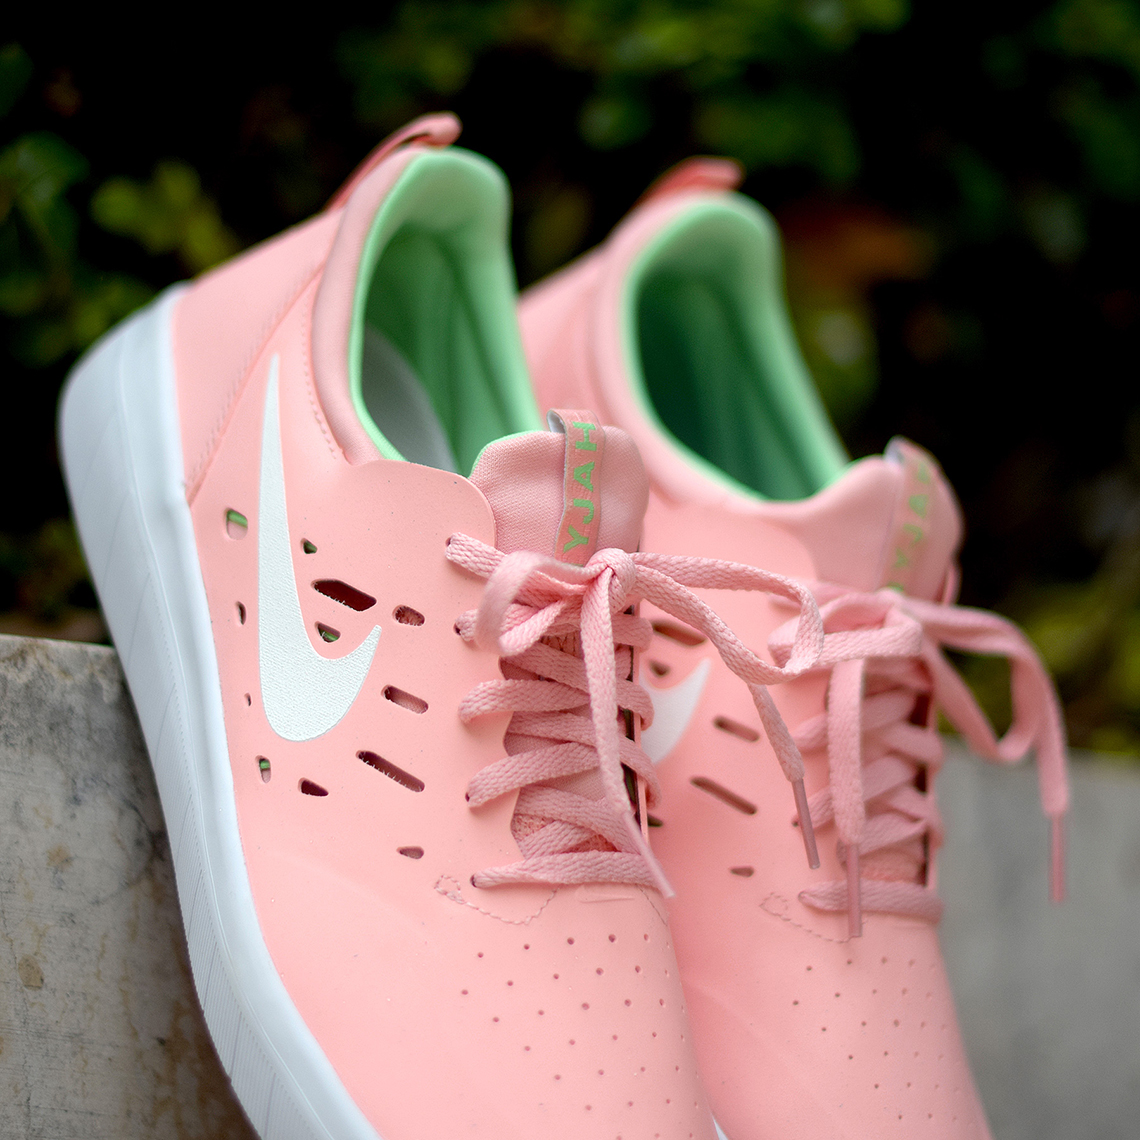 nyjah huston shoes pink